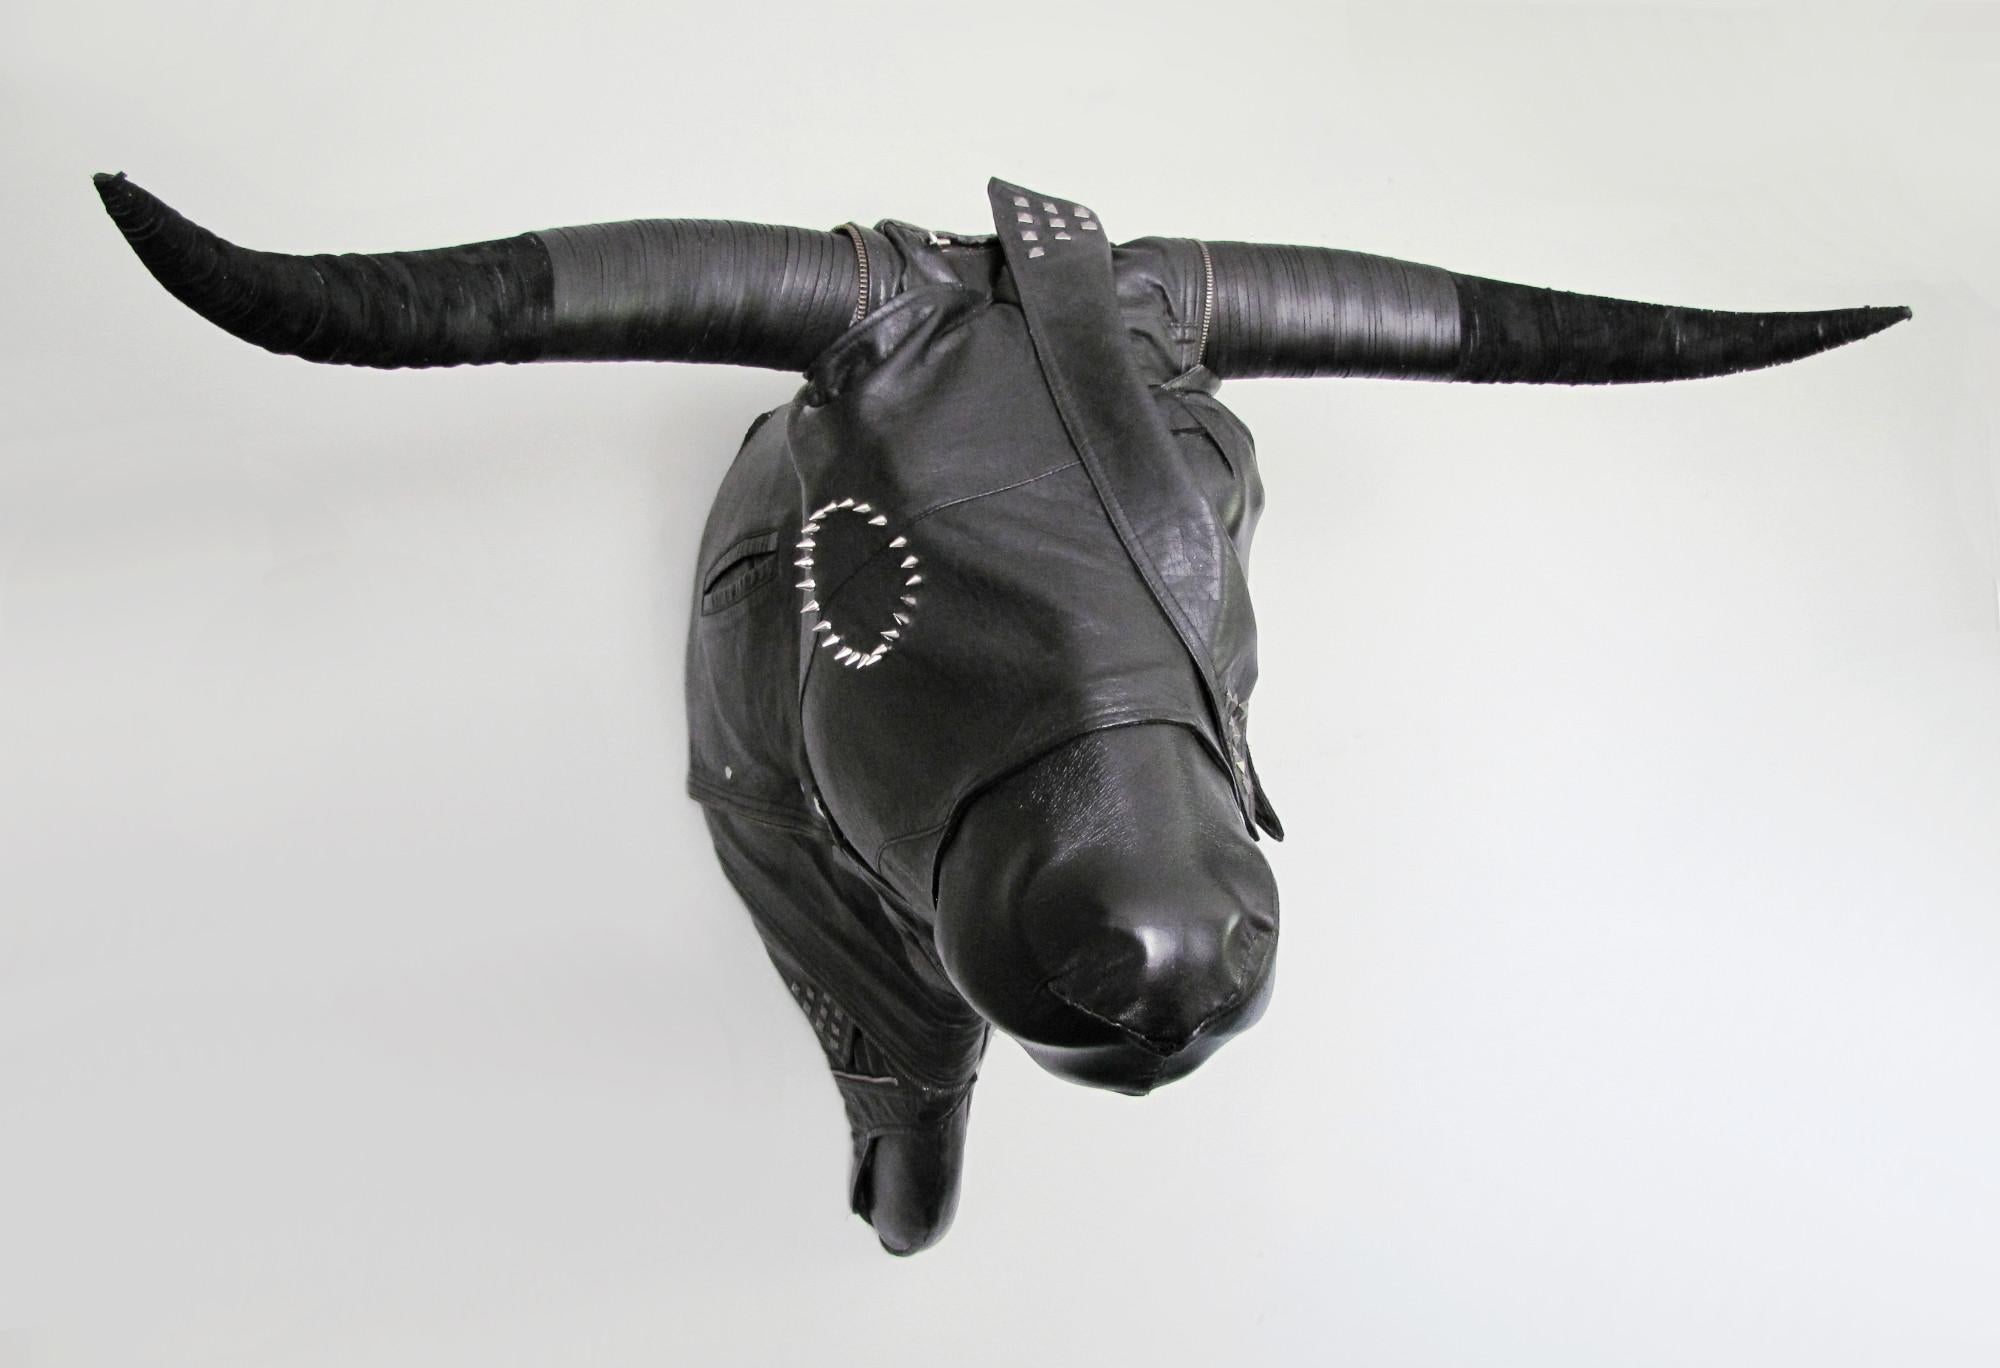 Bravado - Sculpture by Rachel Denny